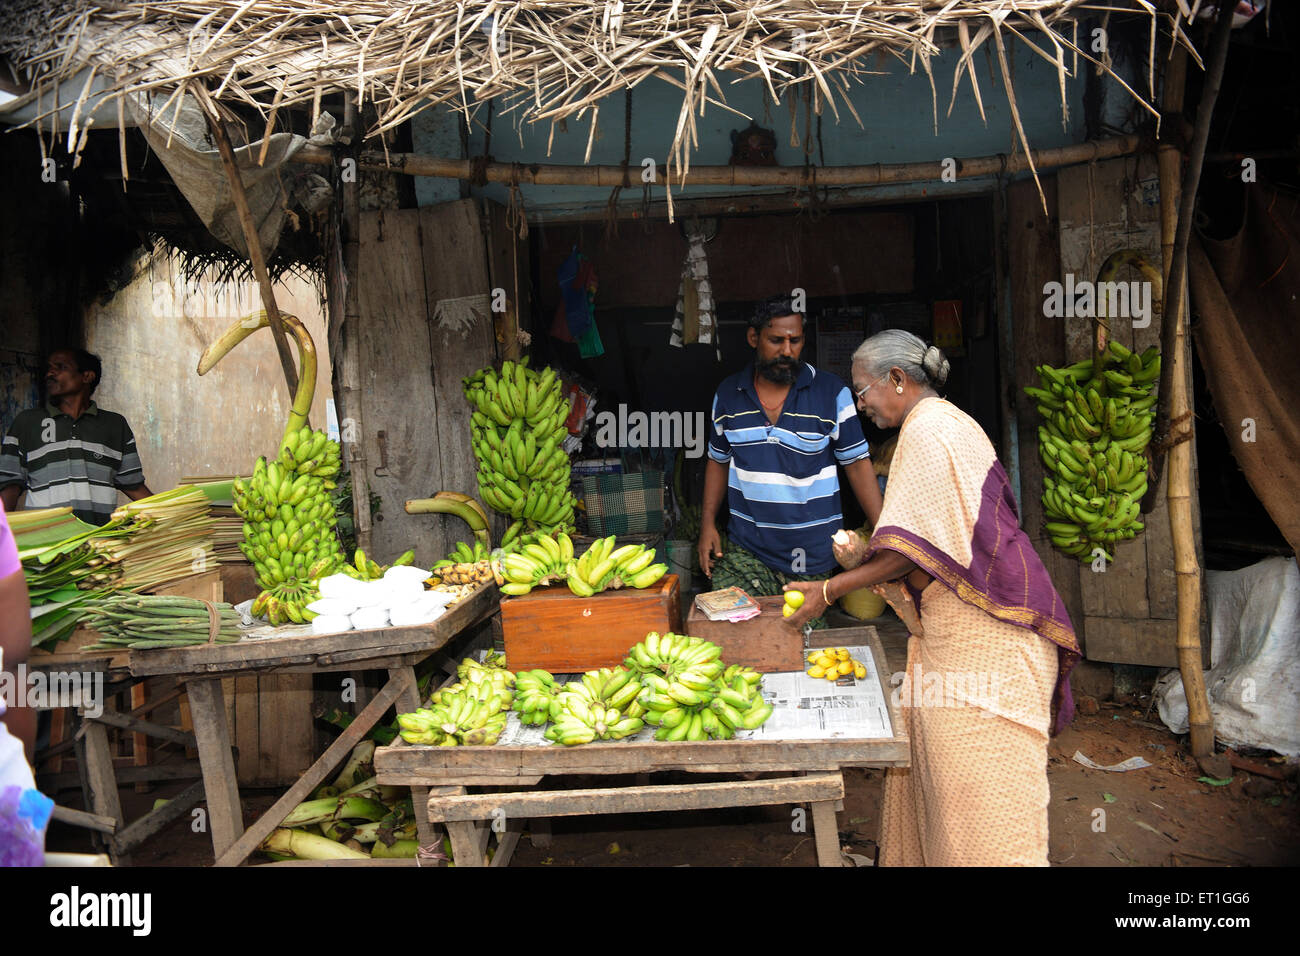 Vendeur de fruits ; Thanjavur ; Tamil Nadu Inde ; PAS DE MR Banque D'Images